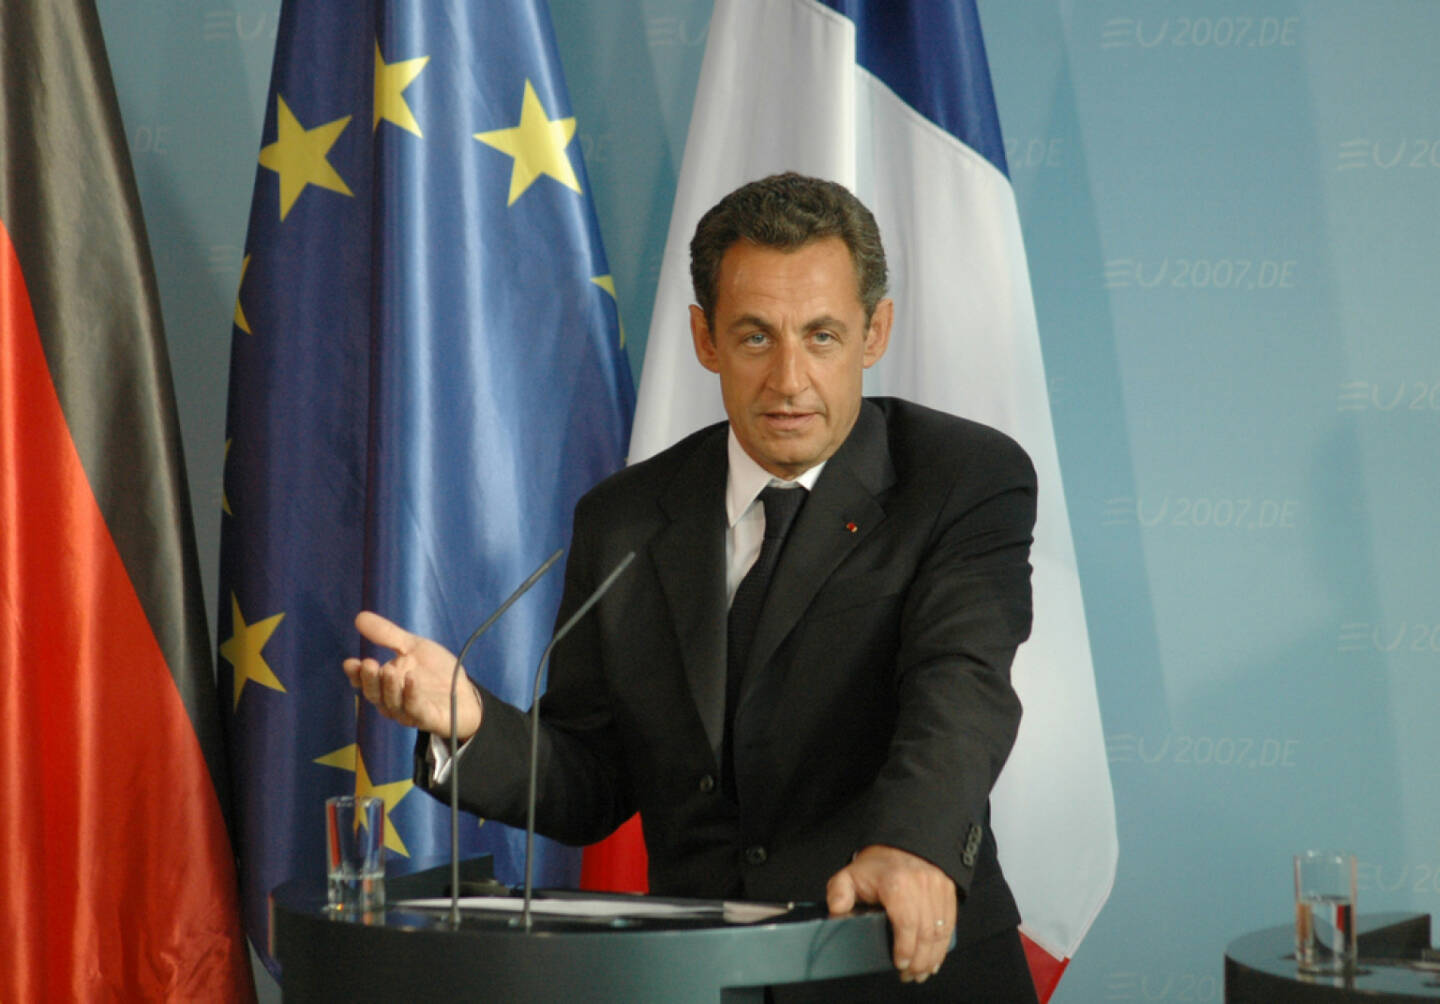 Nicolas Sarkozy, Frankreich, <a href=http://www.shutterstock.com/gallery-320989p1.html?cr=00&pl=edit-00>360b</a> / <a href=http://www.shutterstock.com/?cr=00&pl=edit-00>Shutterstock.com</a>, 360b / Shutterstock.com